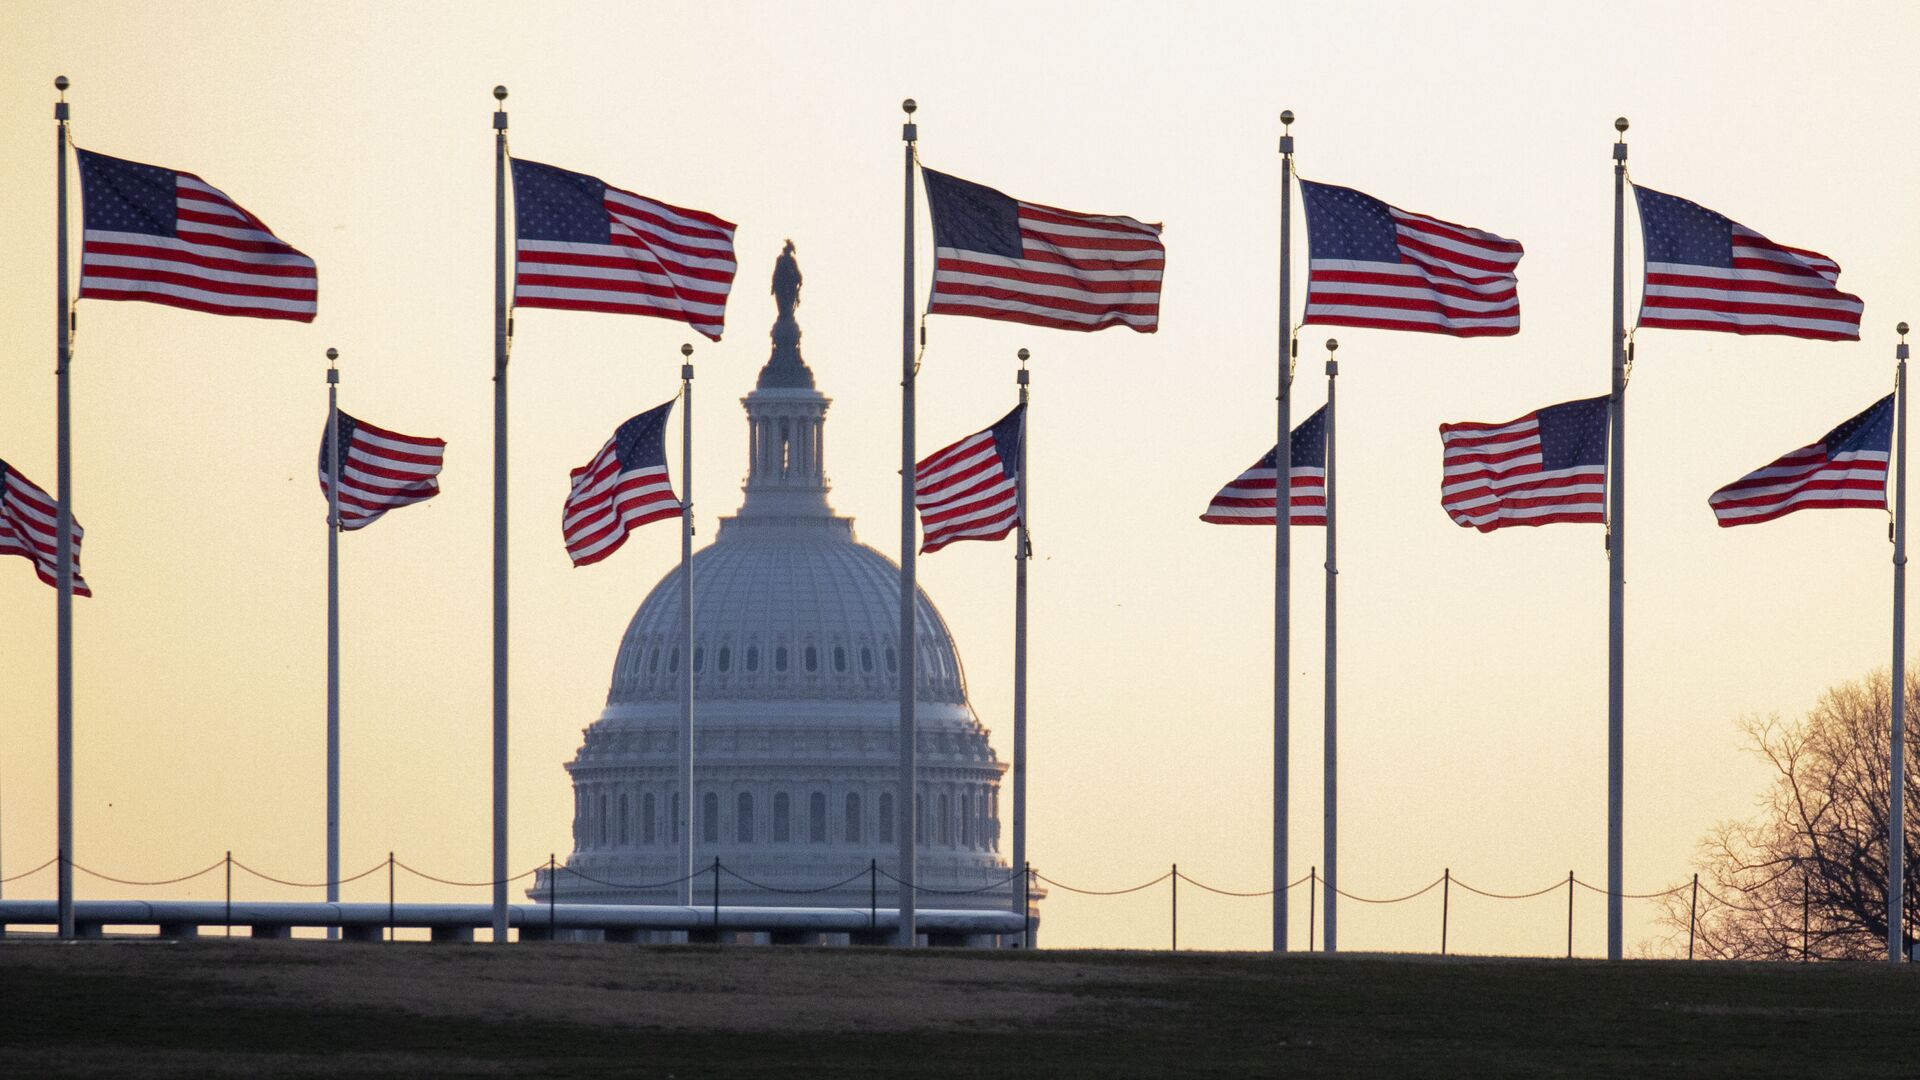 Американские флаги на фоне Капитолия в Вашингтоне, США - Sputnik 日本, 1920, 27.10.2021